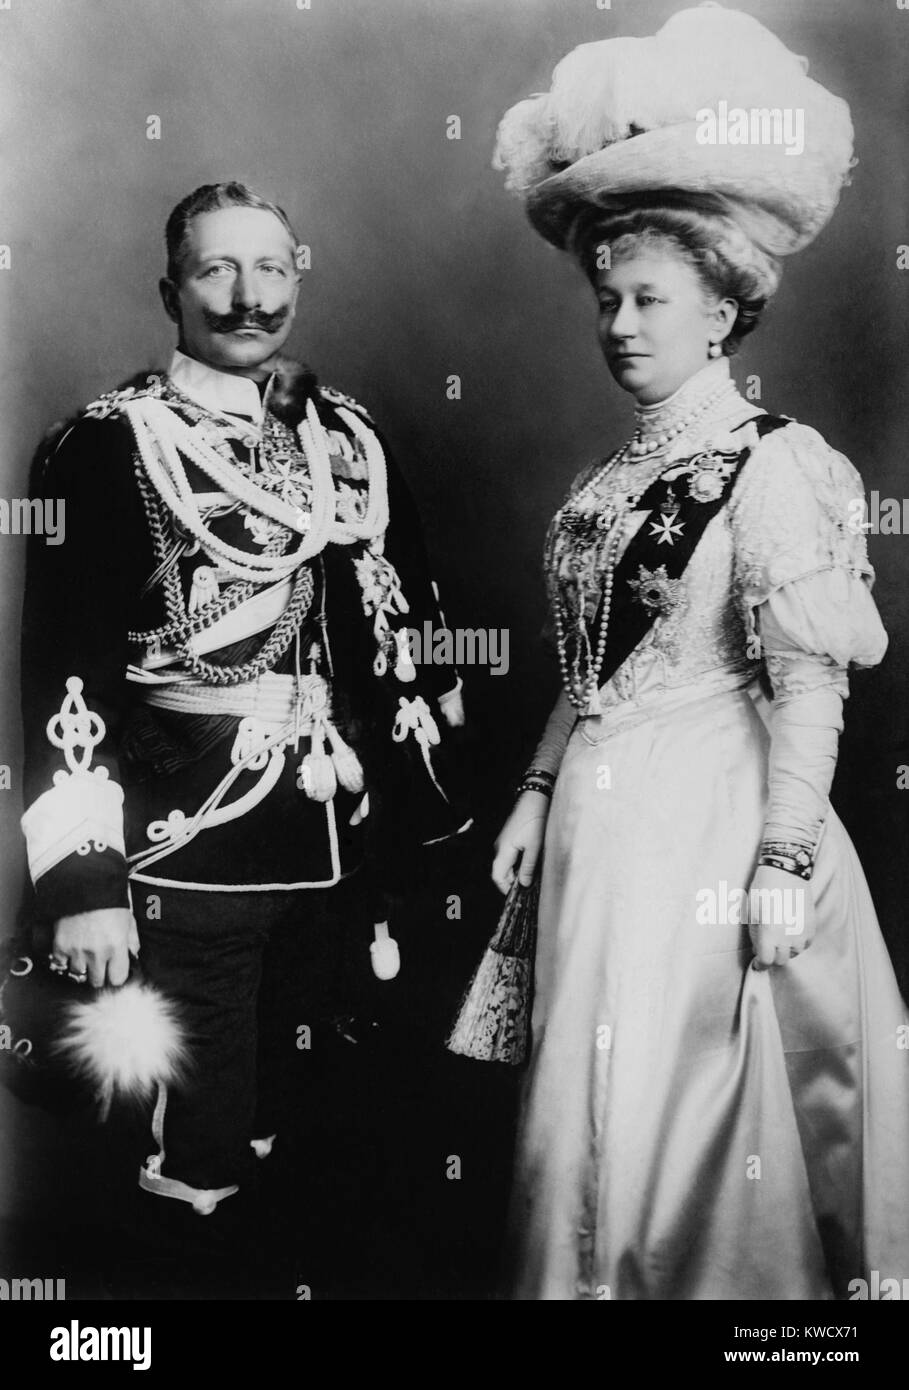 L'empereur Guillaume II, empereur allemand, et son épouse, Augusta Victoria. Photo a été prise, au cours d'une visite au château de Windsor en novembre 1907 (BSLOC 2017 2 44) Banque D'Images